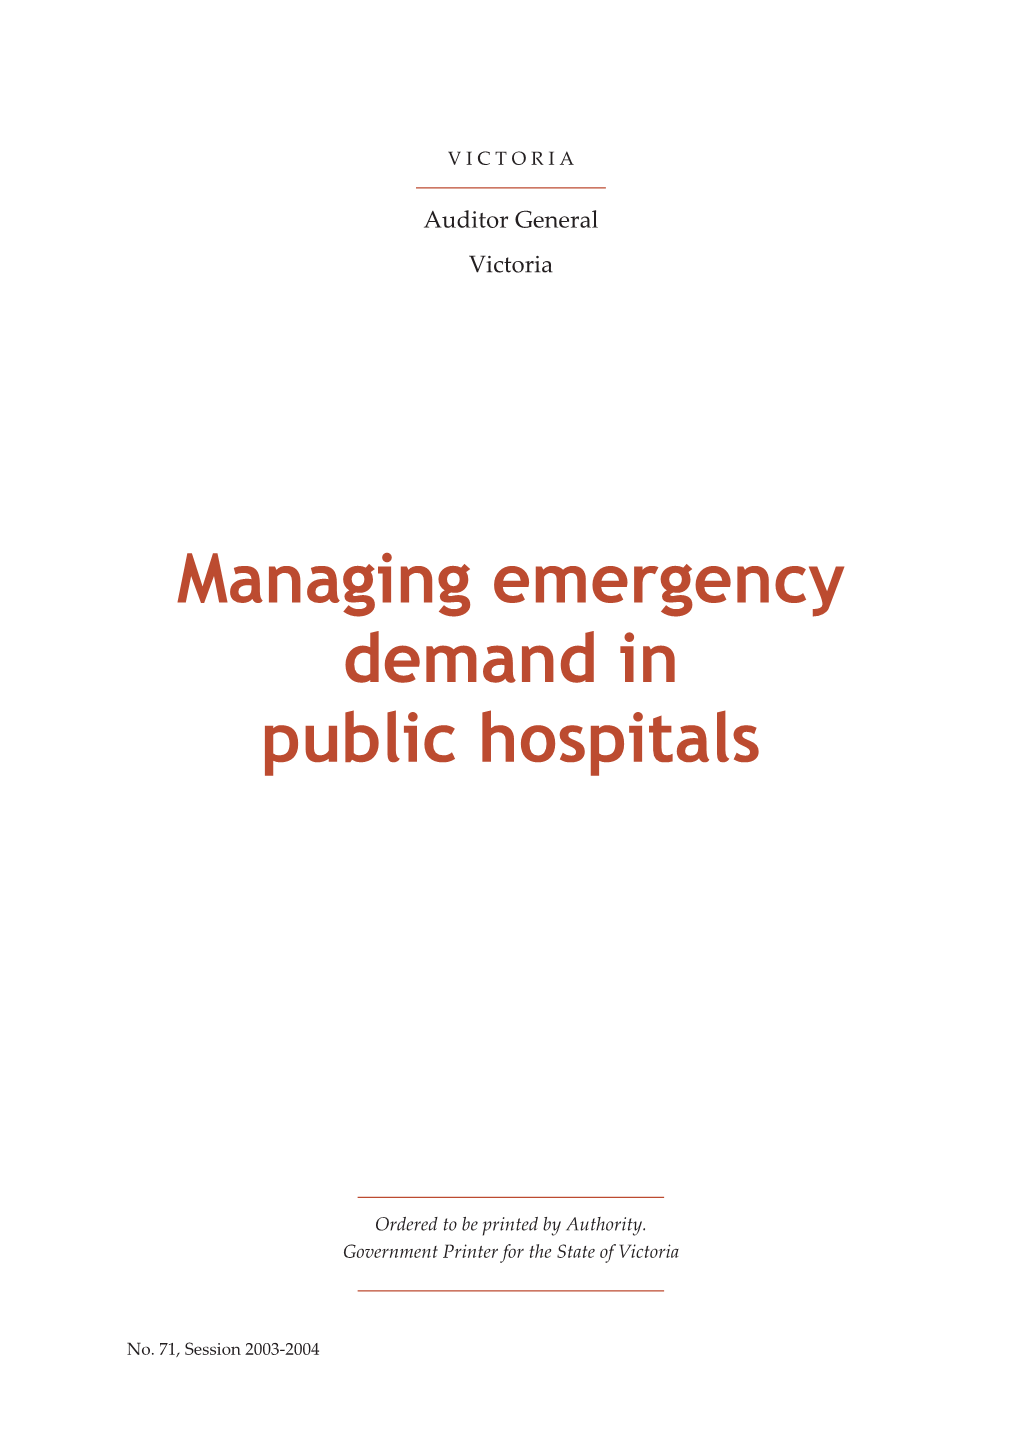 Managing Emergency Demand in Public Hospitals